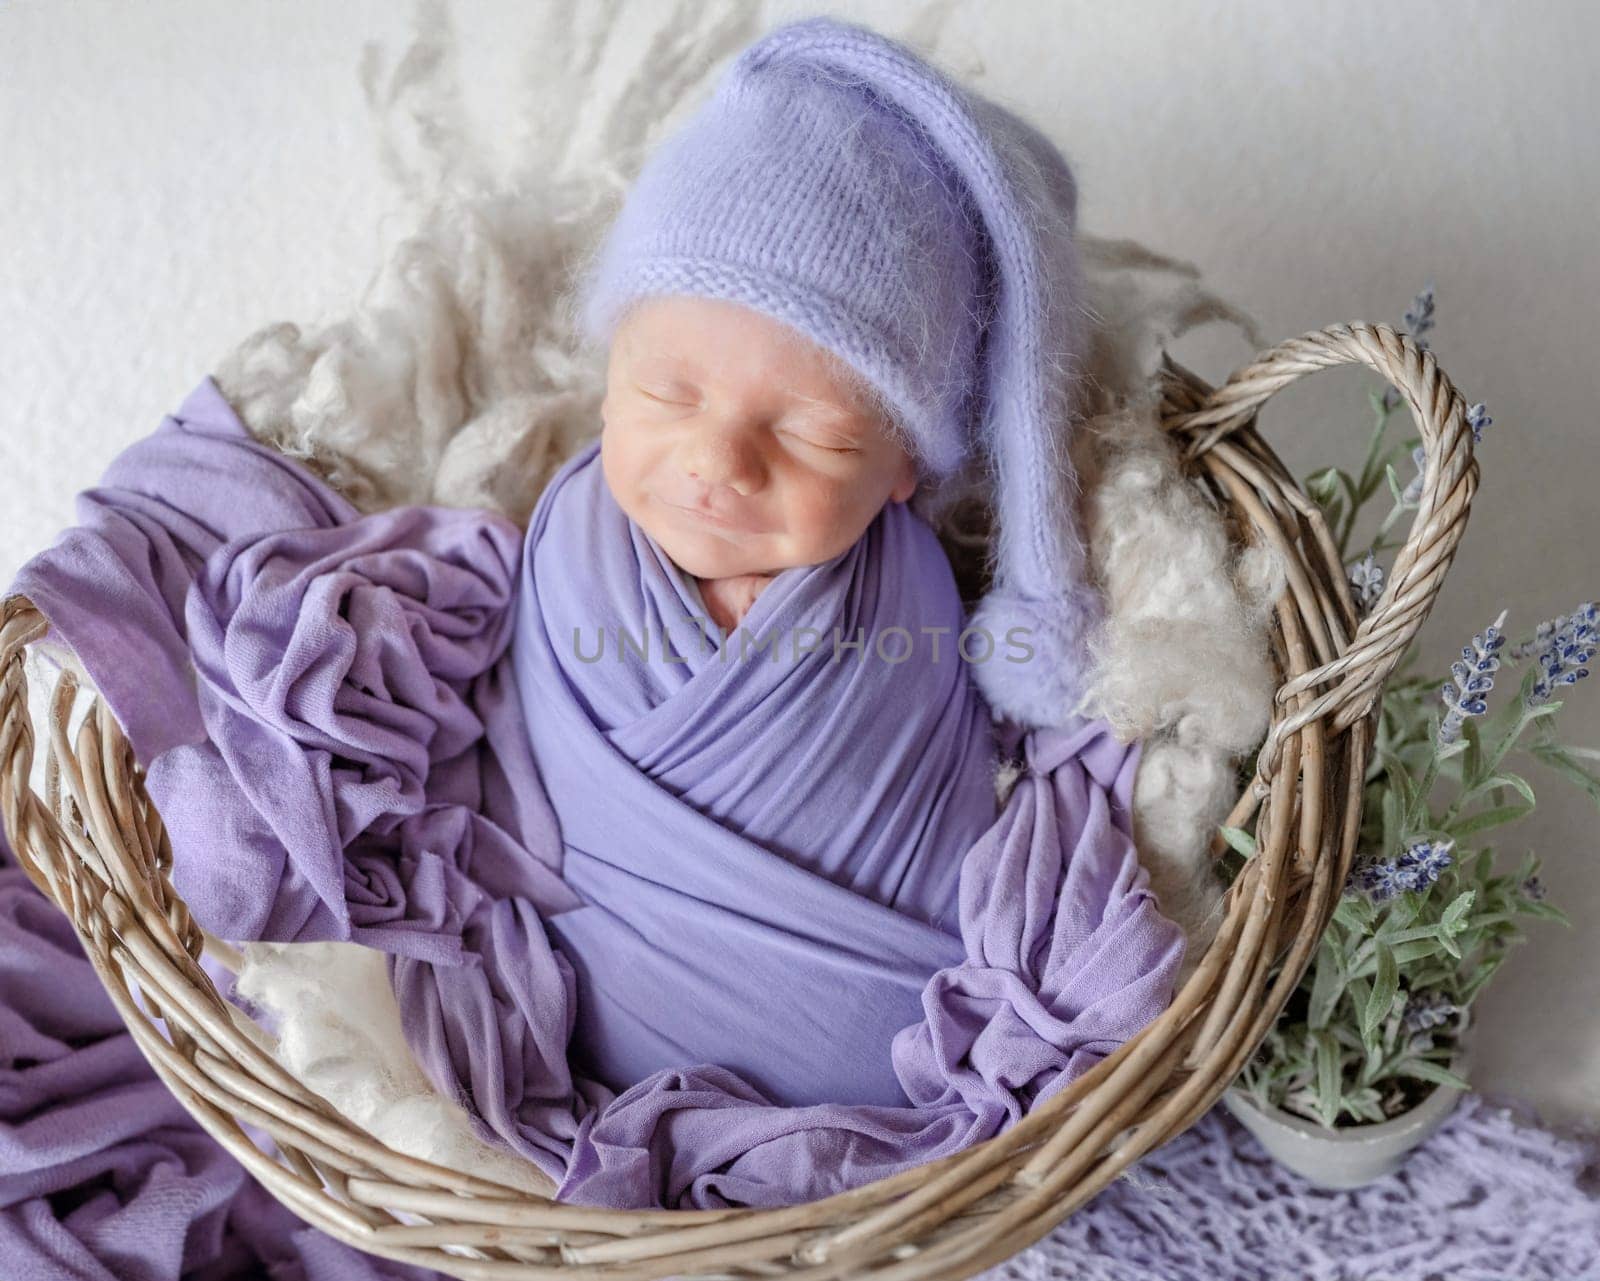 Newborn Baby In Lilac Wrap Sleeps In Basket by tan4ikk1